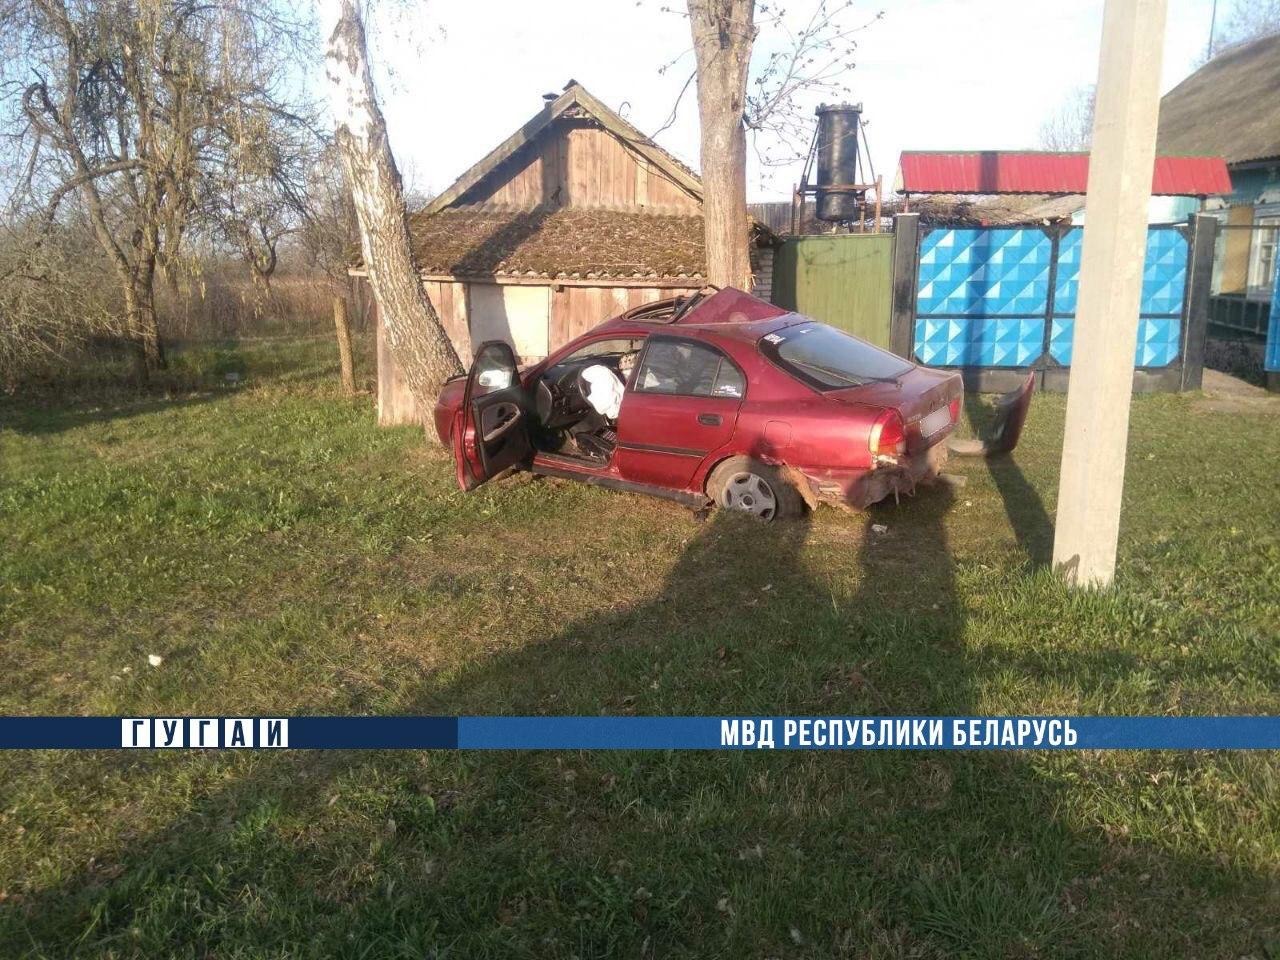 Под Рогачевом 19-летний водитель врезался в дерево, пострадали две девушки